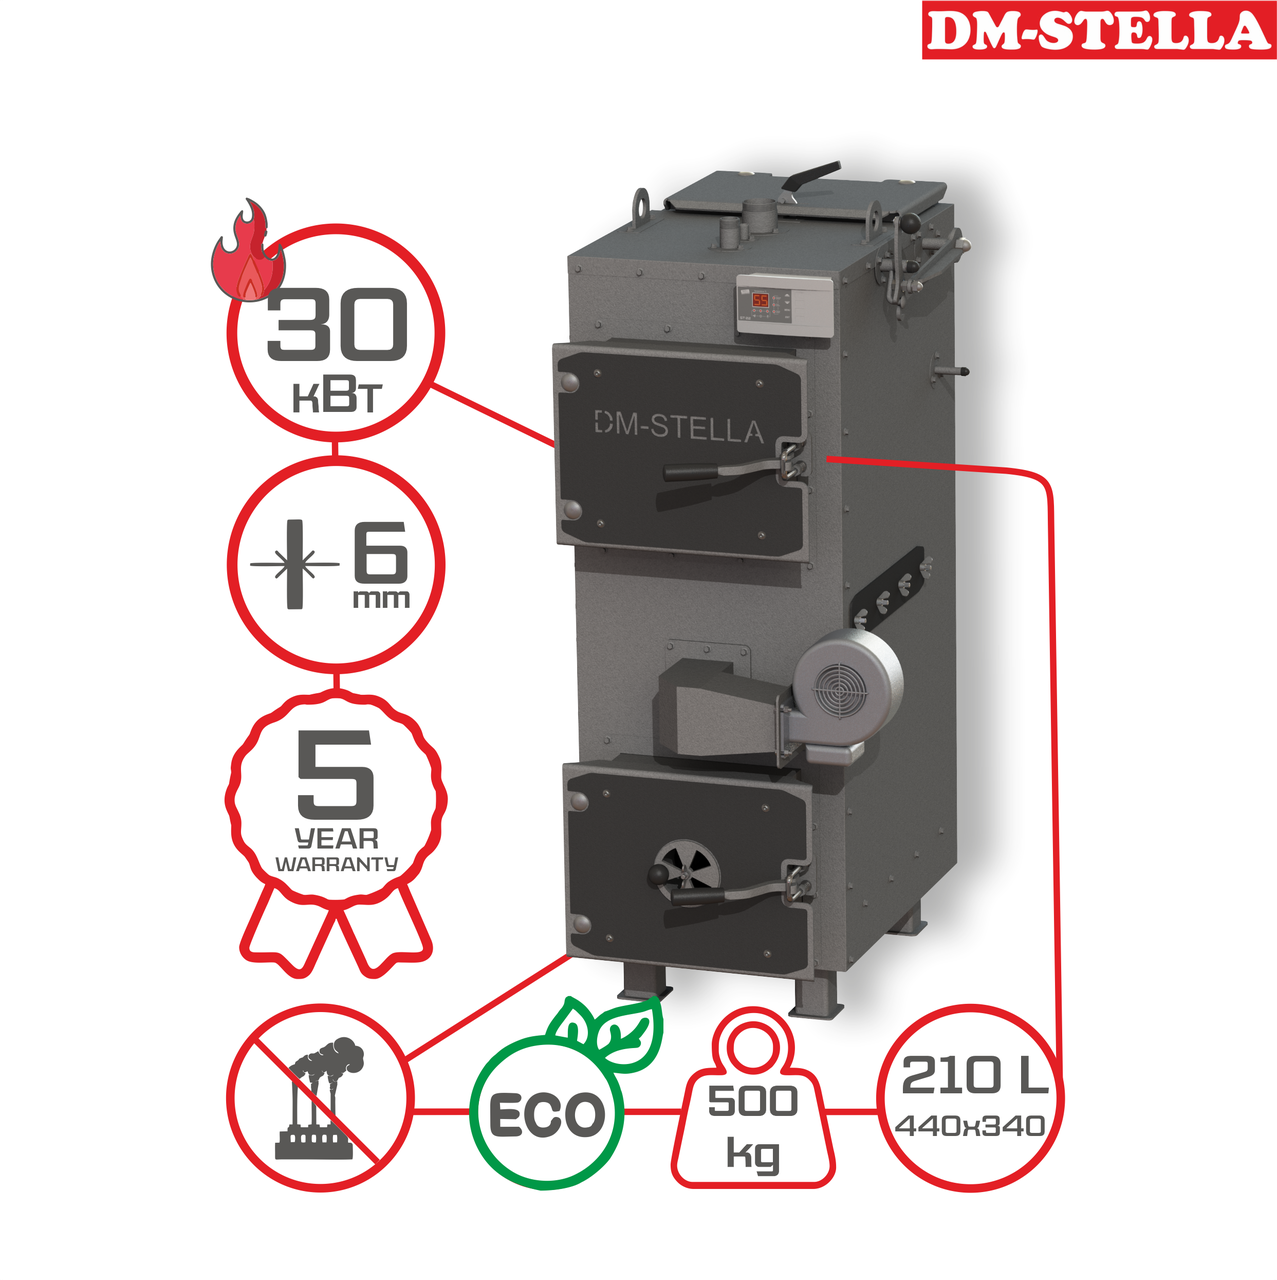 Твердопаливний піролізний котел 30 кВт DM-STELLA